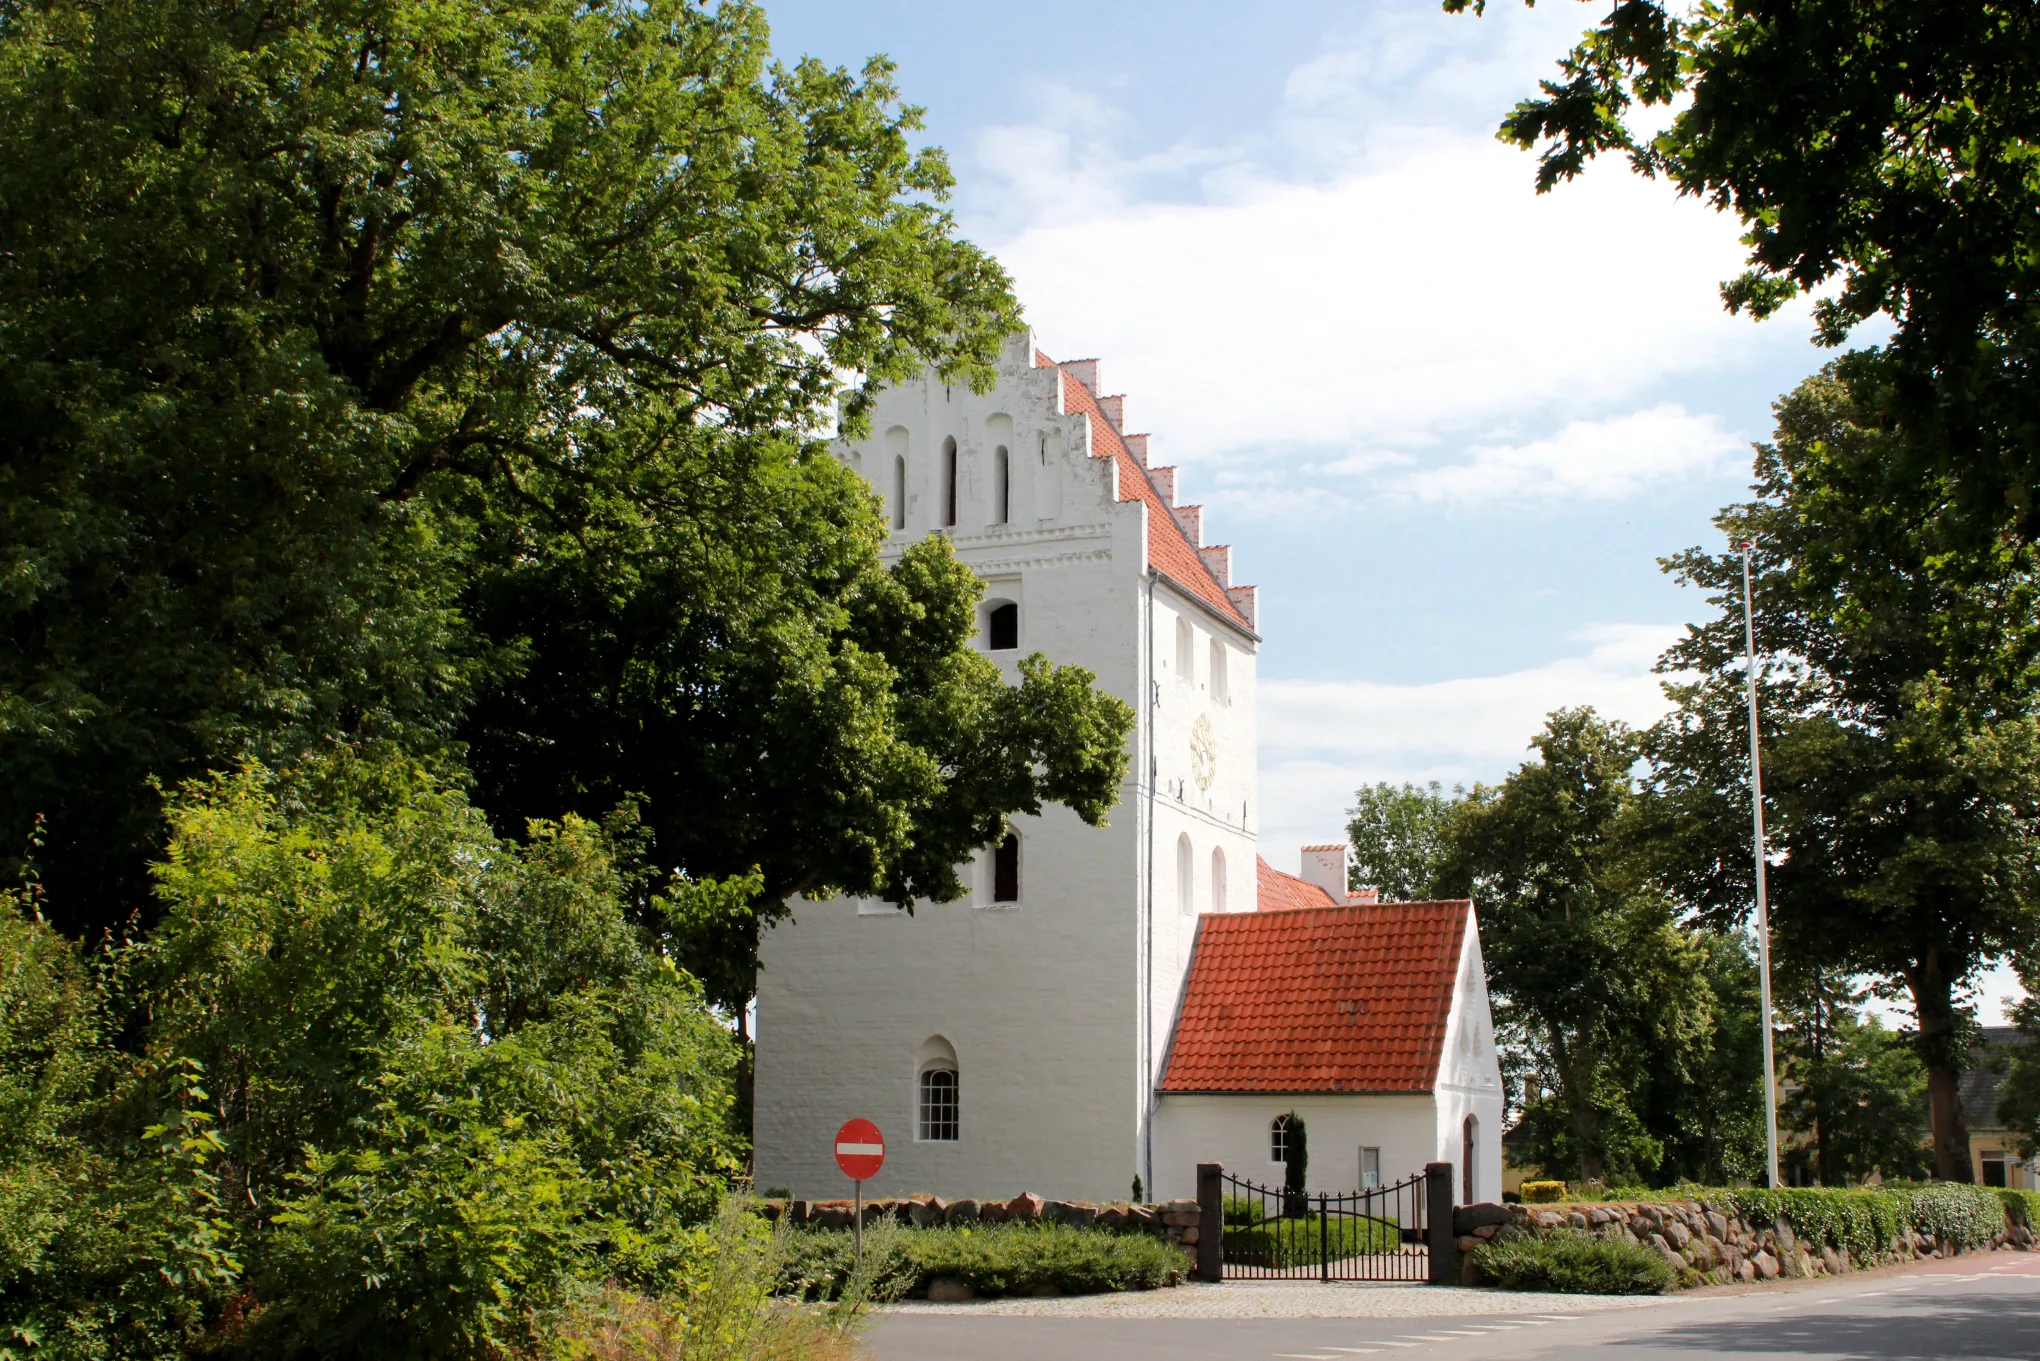 Photo showing: The parish church at Birkende, Kertemimde Kommune on Funen, Denmark.